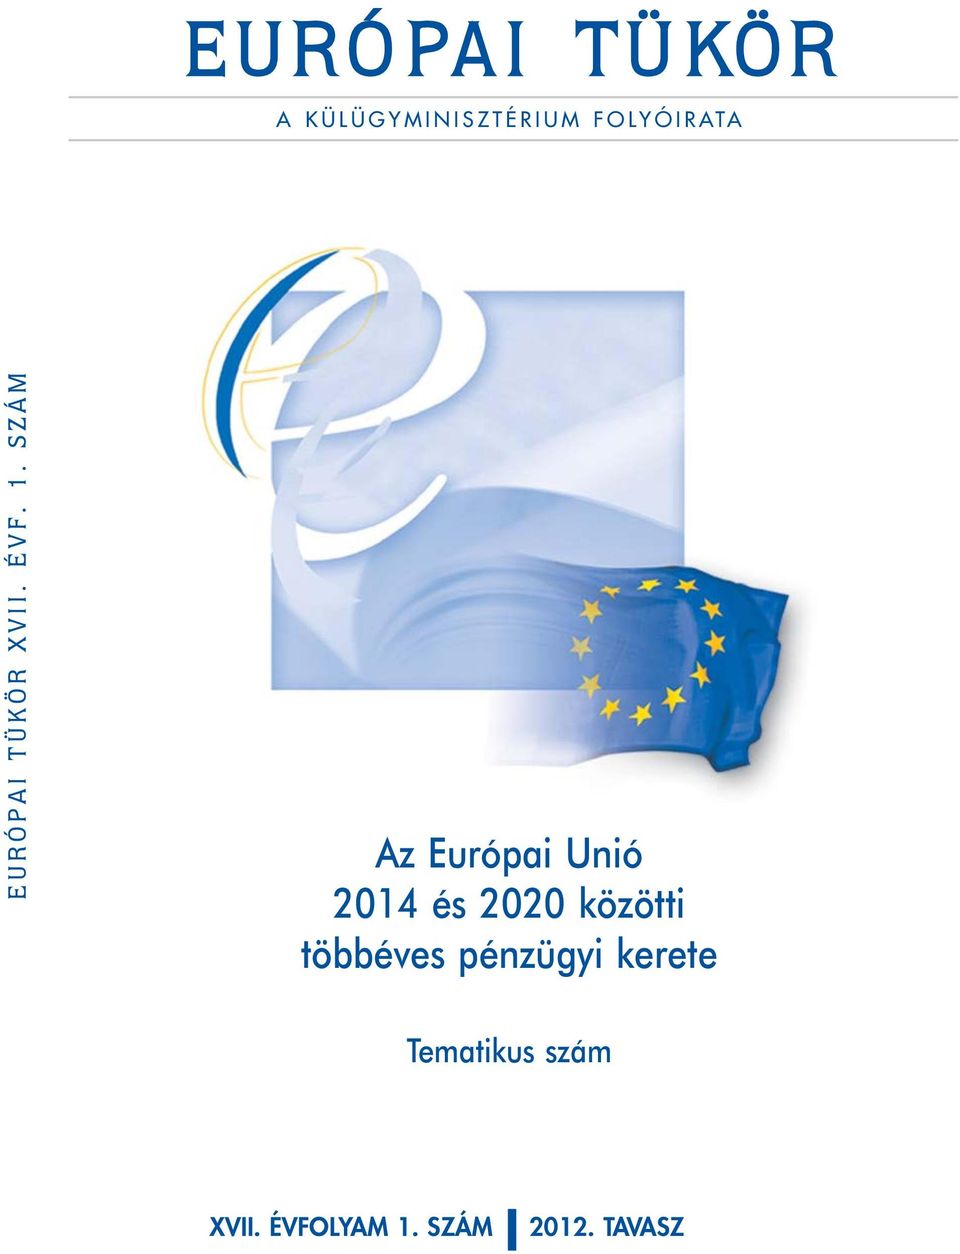 SZÁM Az Európai Unió 2014 és 2020 közötti